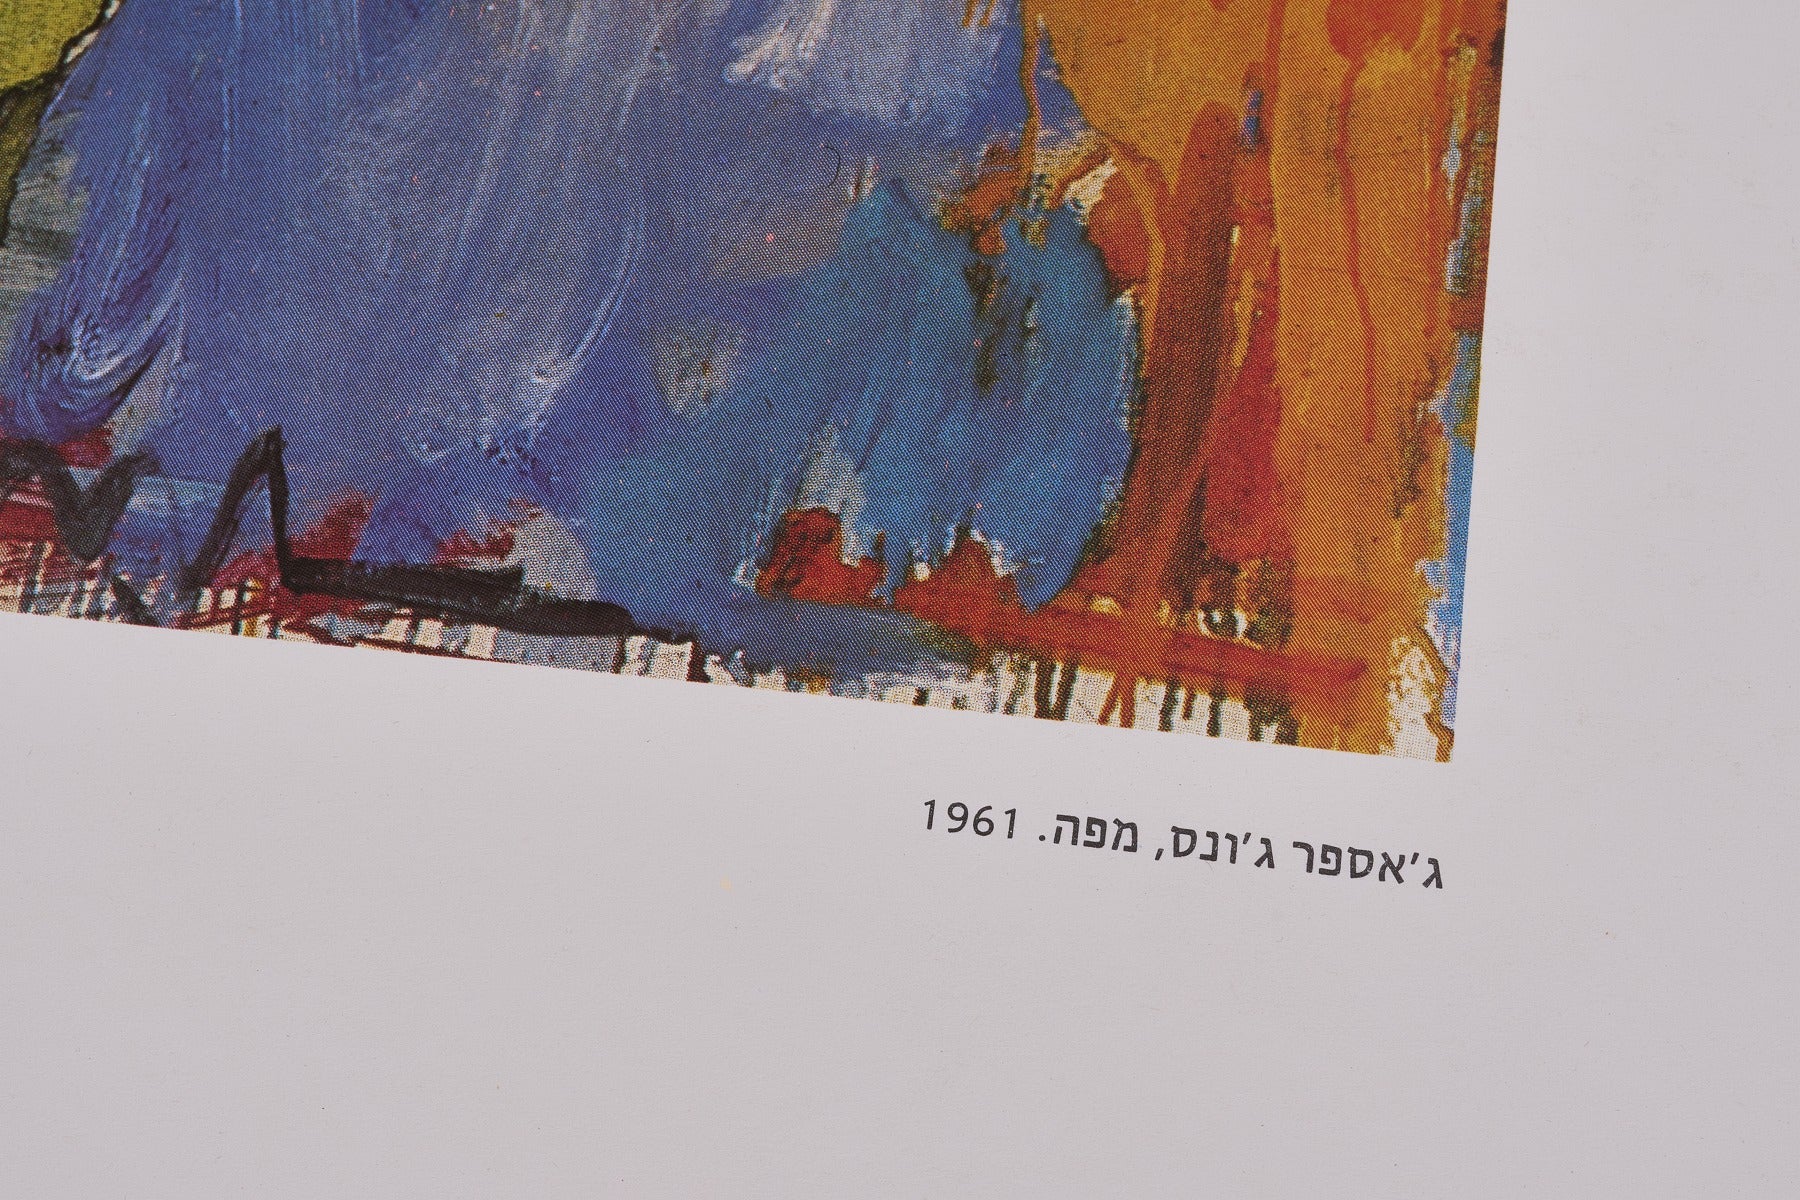 【限定10枚】AMERICAN ART IN THE TWENTIETH CENTURY - THE TEL AVIV MUSEUM 1980 / ジャスパー・ジョーンズ